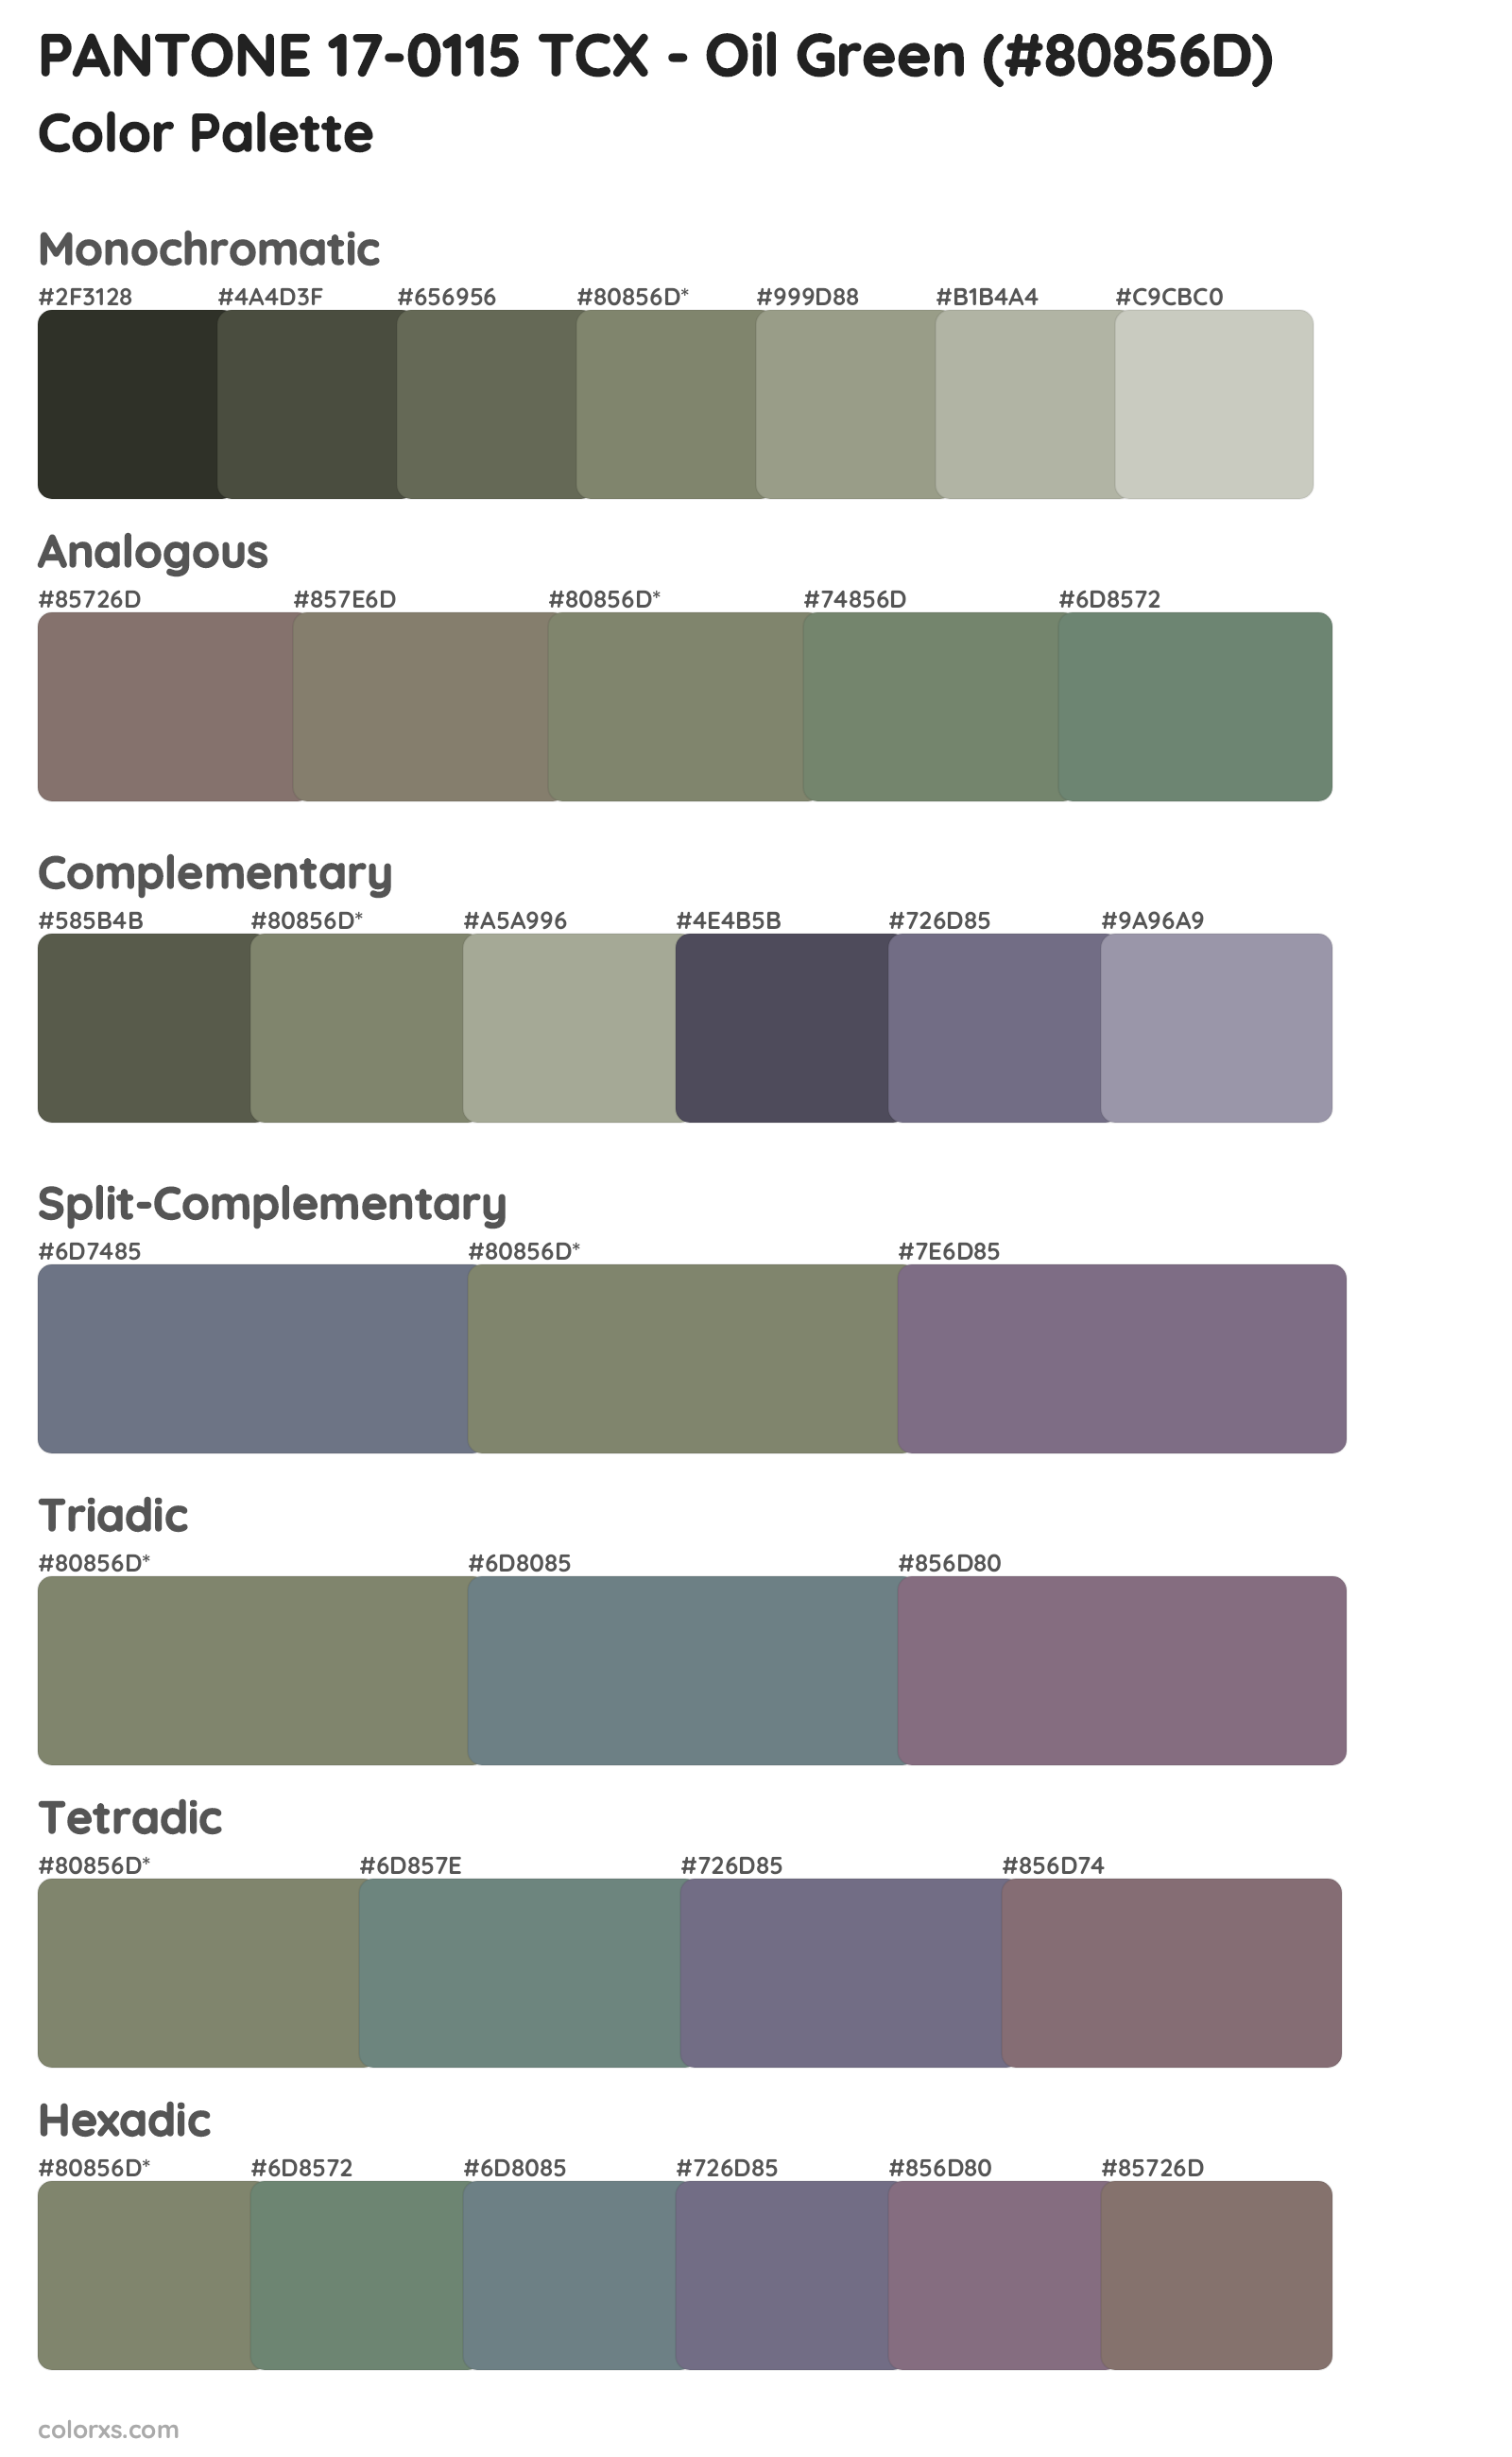 PANTONE 17-0115 TCX - Oil Green Color Scheme Palettes